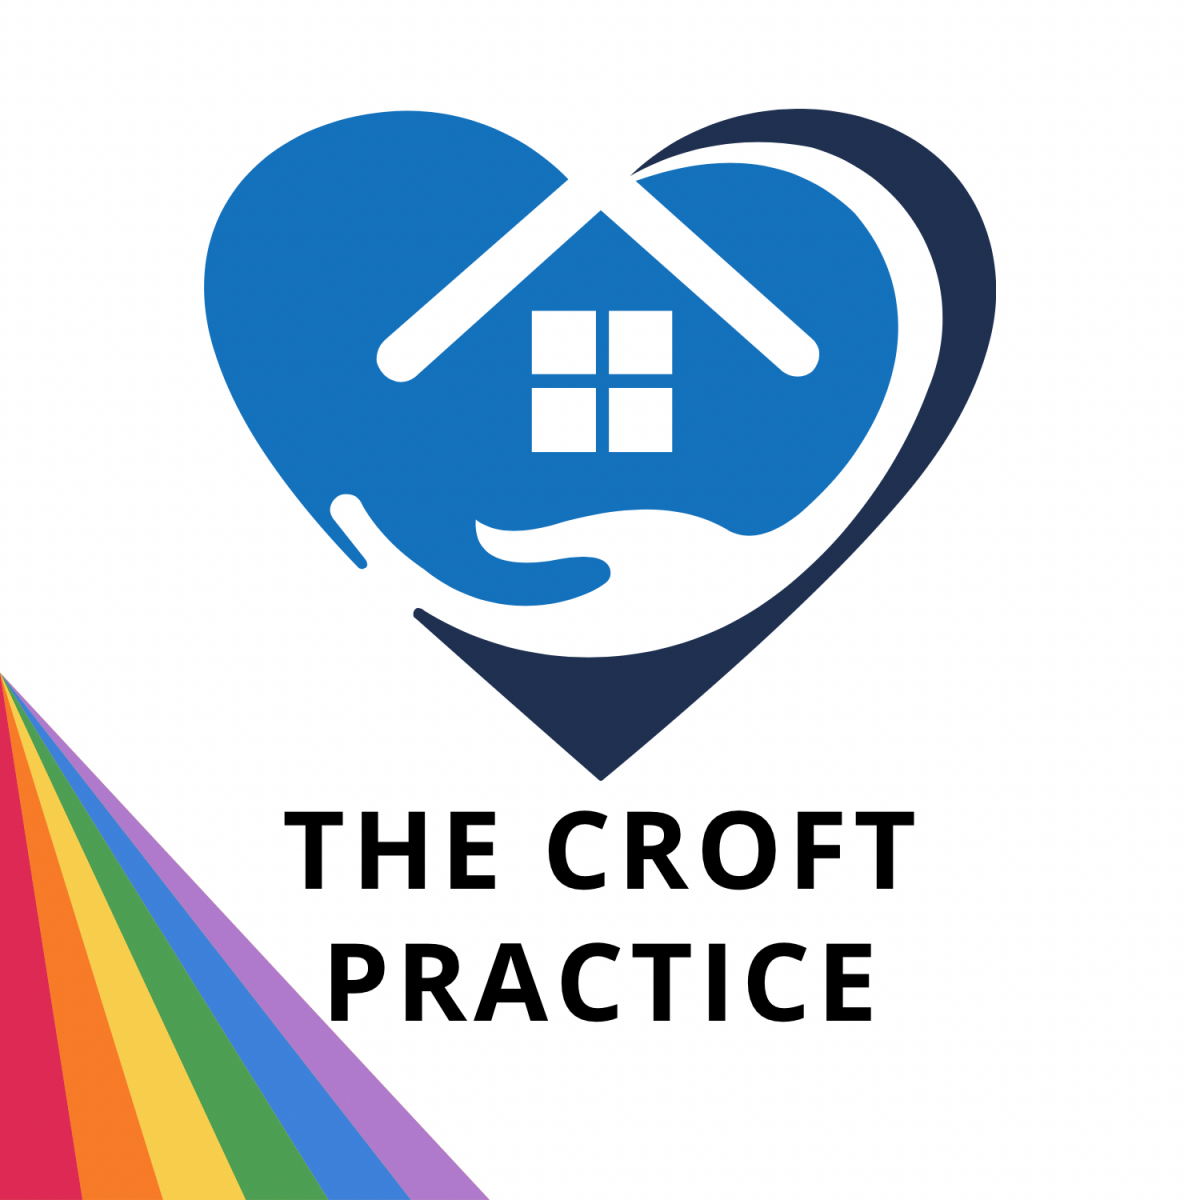 The Croft Practice logo